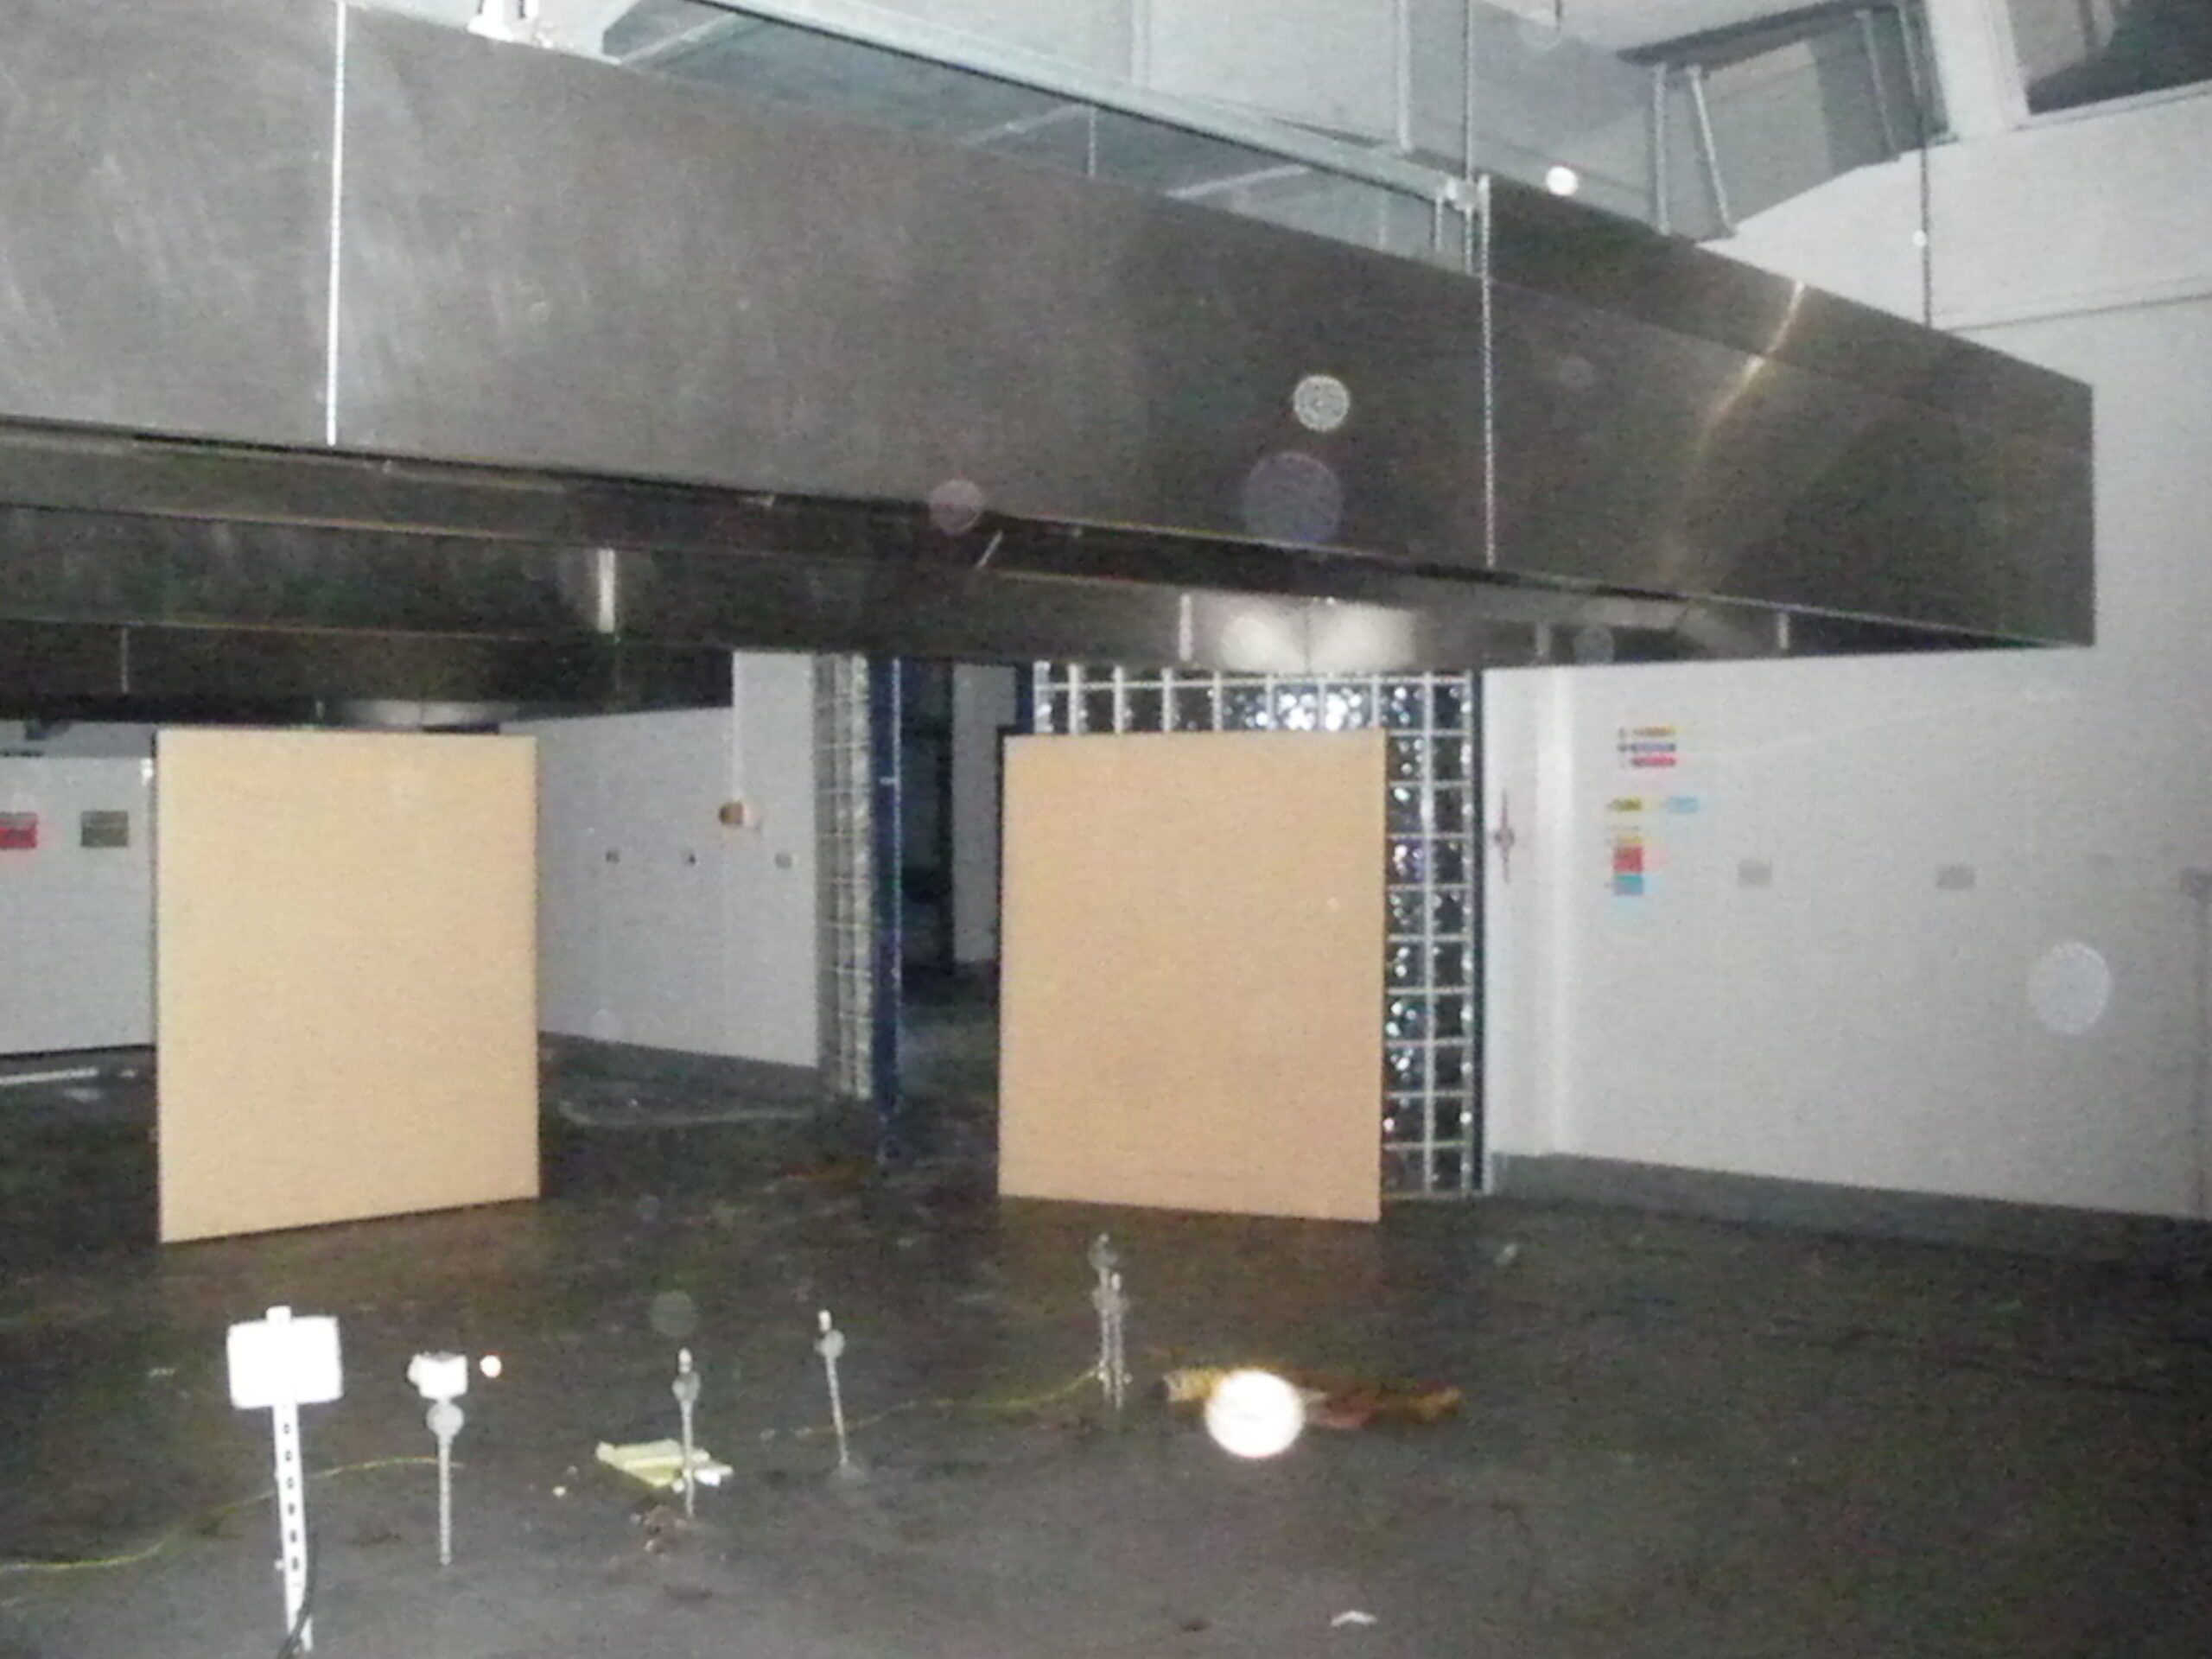 Staff Restaurant kitchens, 13 Sep 2011